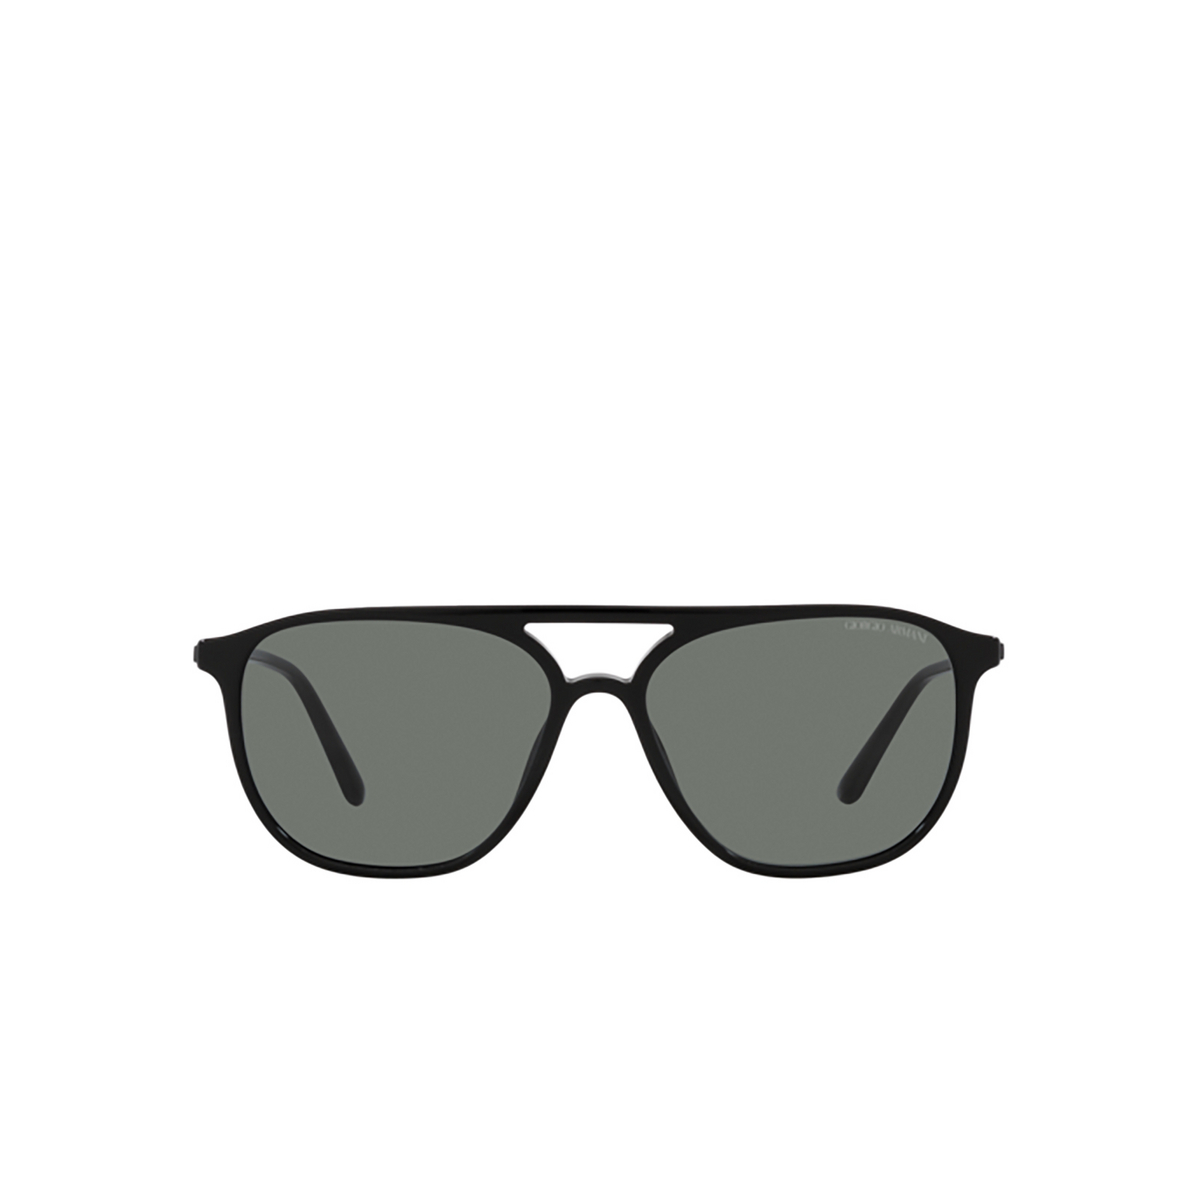 Giorgio Armani AR8179 Sunglasses 5001/1 Black - front view